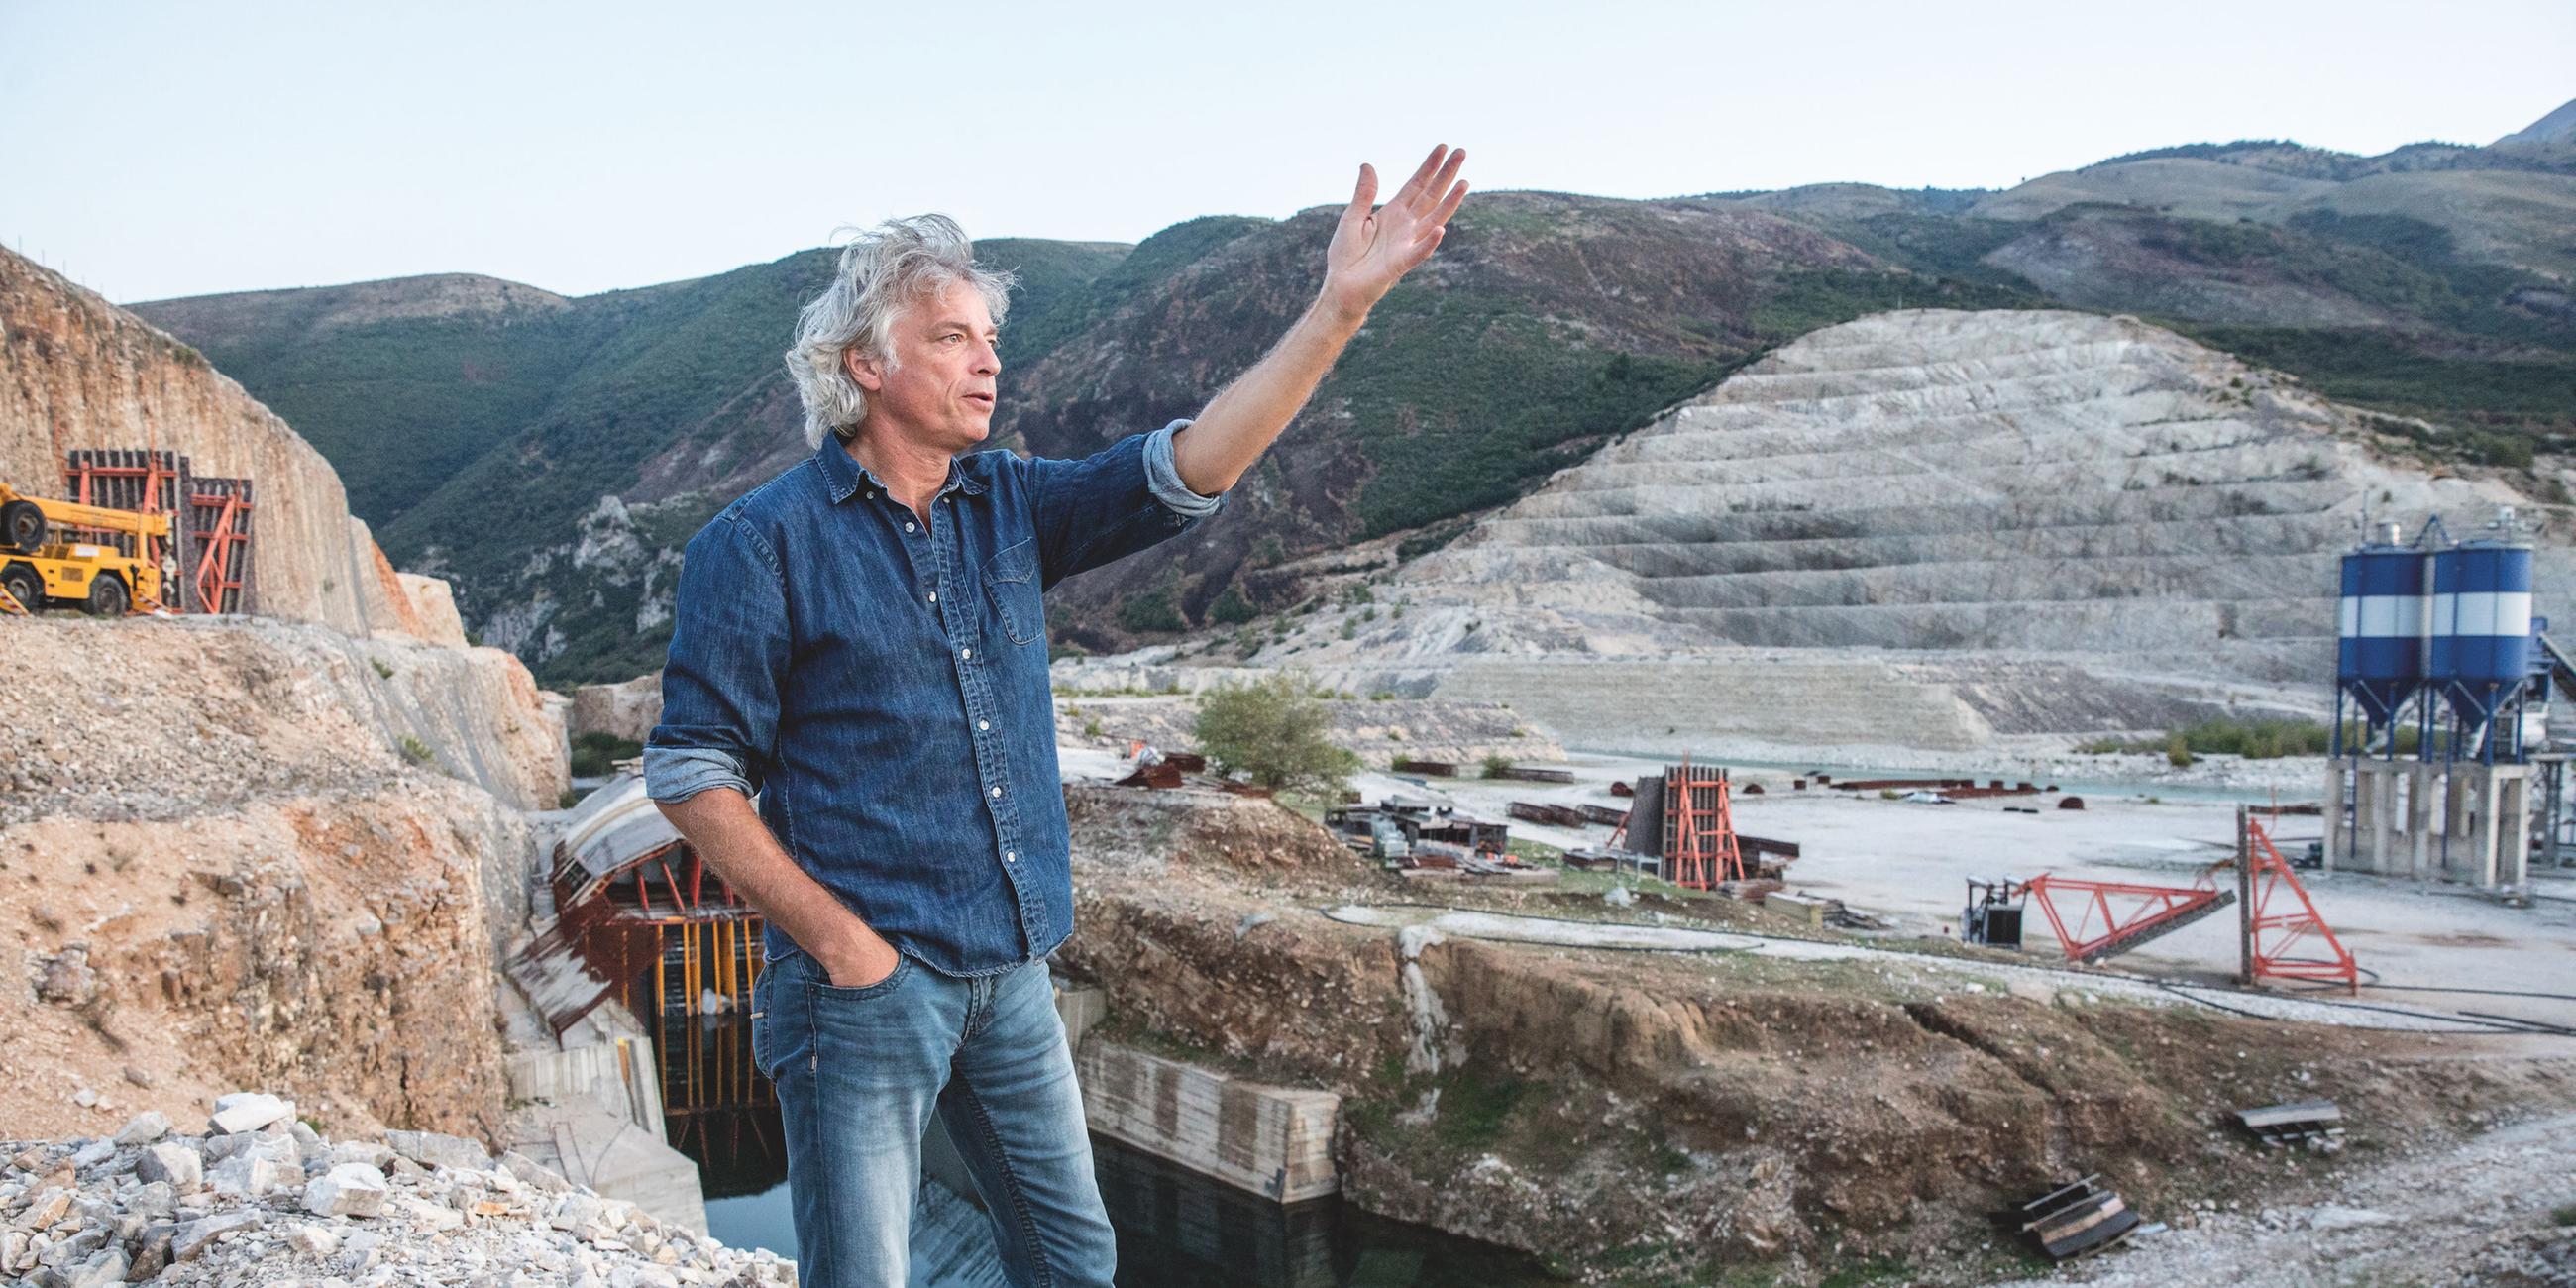 Artenschützer Ulrich Eichelmann an der ehemaligen Kraftwerksbaustelle "Kalivac" an der Vjosa in Albanien. Das Staudammprojekt war im Bau und wurde dann aus Naturschutzgründen gestoppt